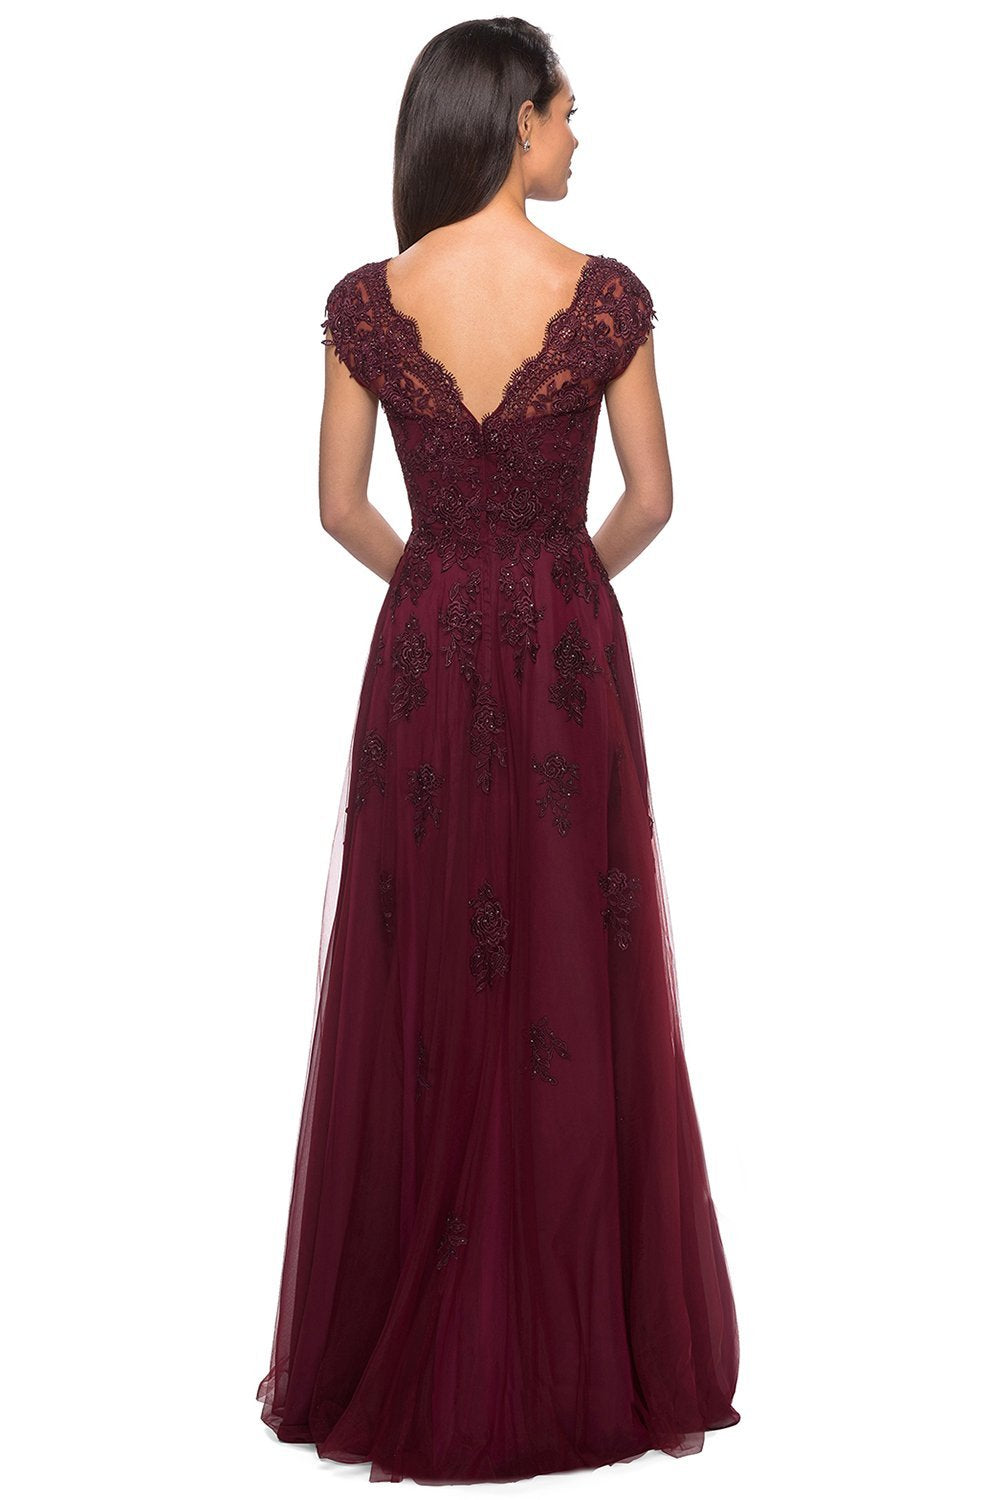 La Femme - Cap Sleeve V-Neck Floral Lace Appliqued Tulle Dress 26942SC In Red